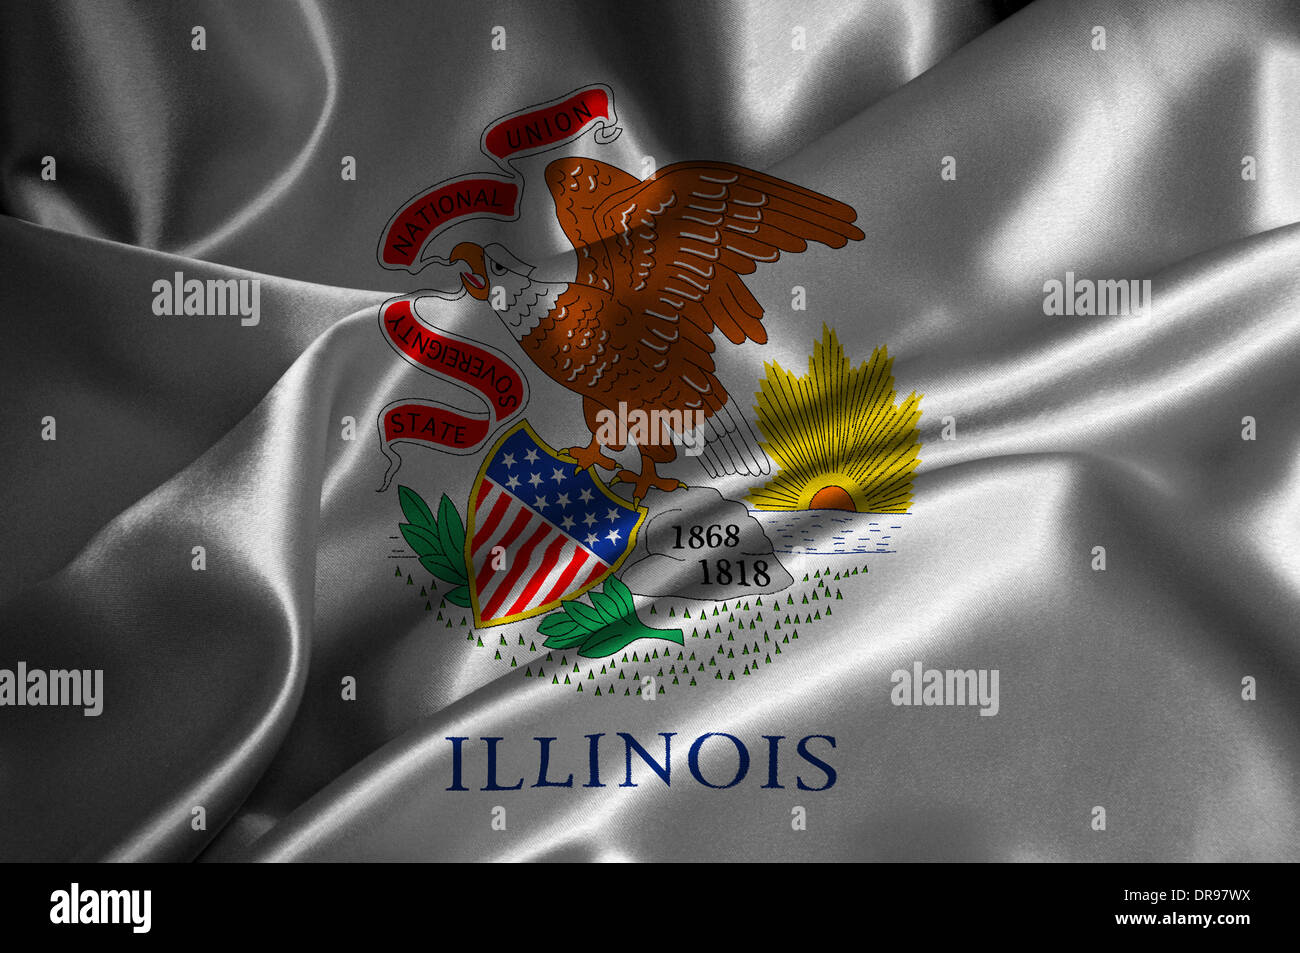 Illinois flag on satin texture. Stock Photo